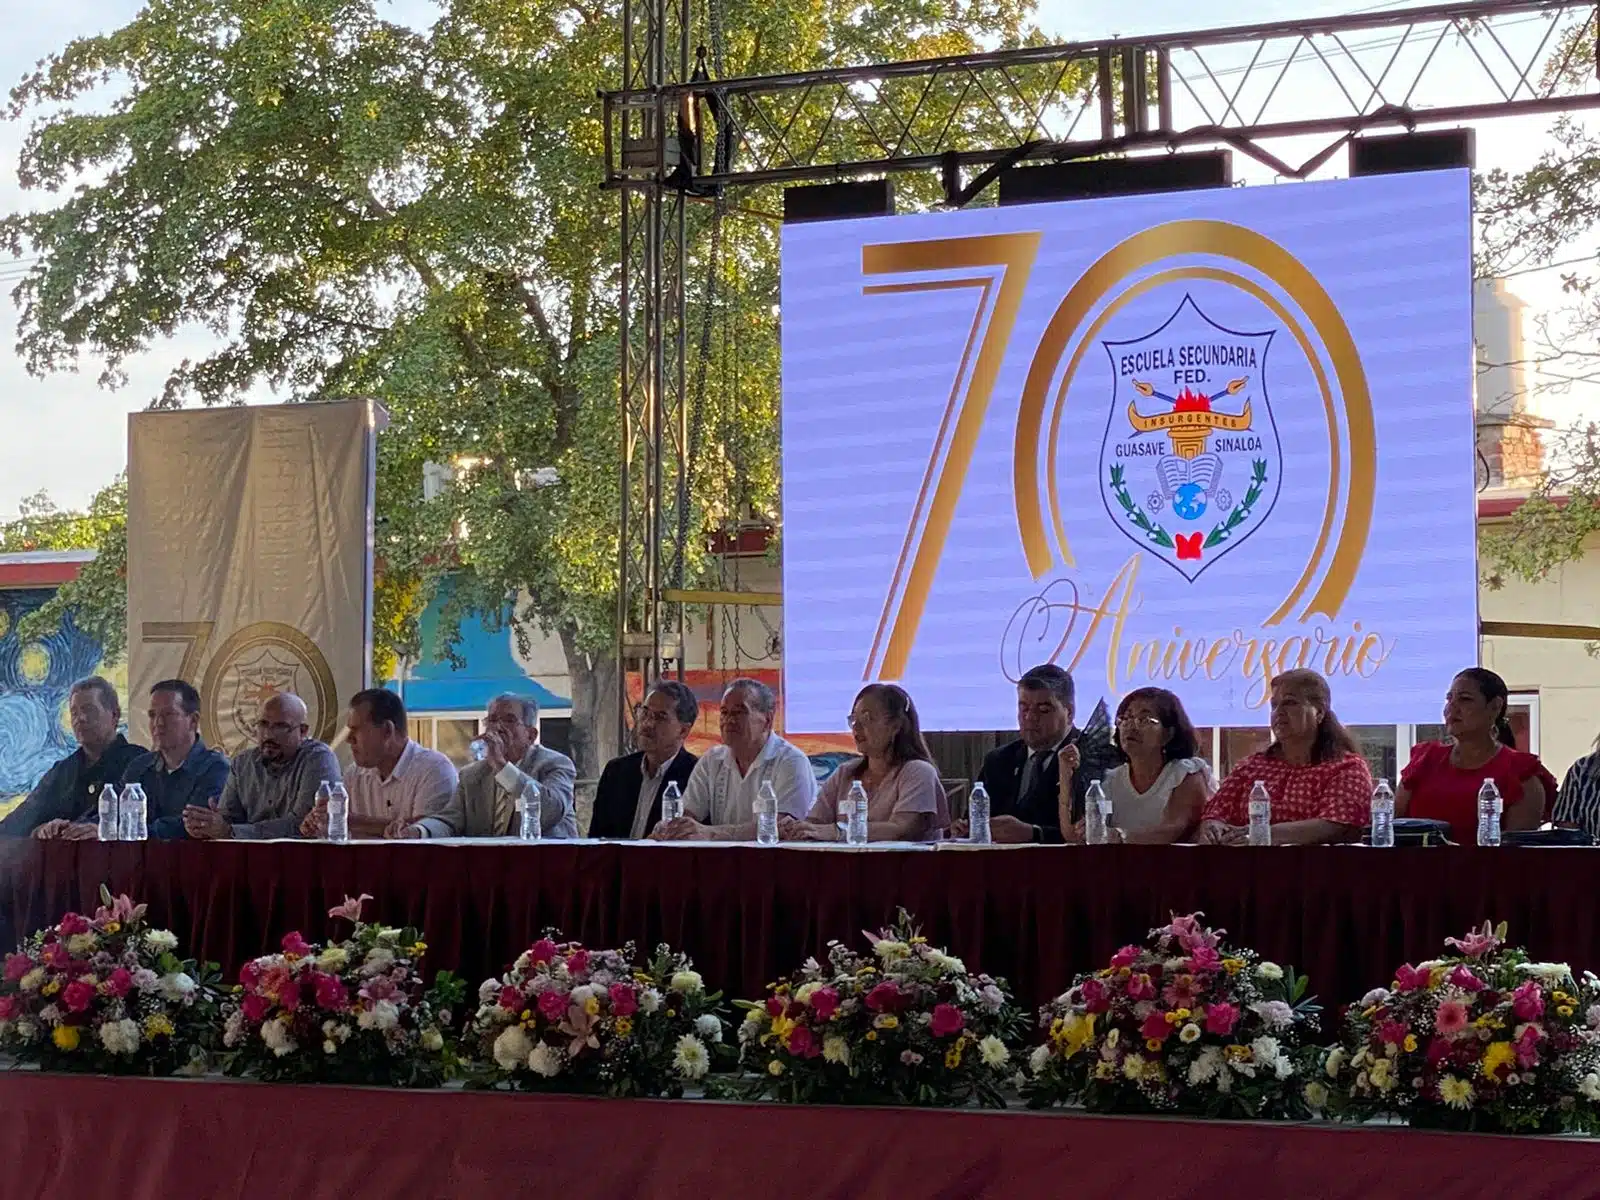 70 Aniversario de la Escuela Secundaria General Insurgentes (ESFI)